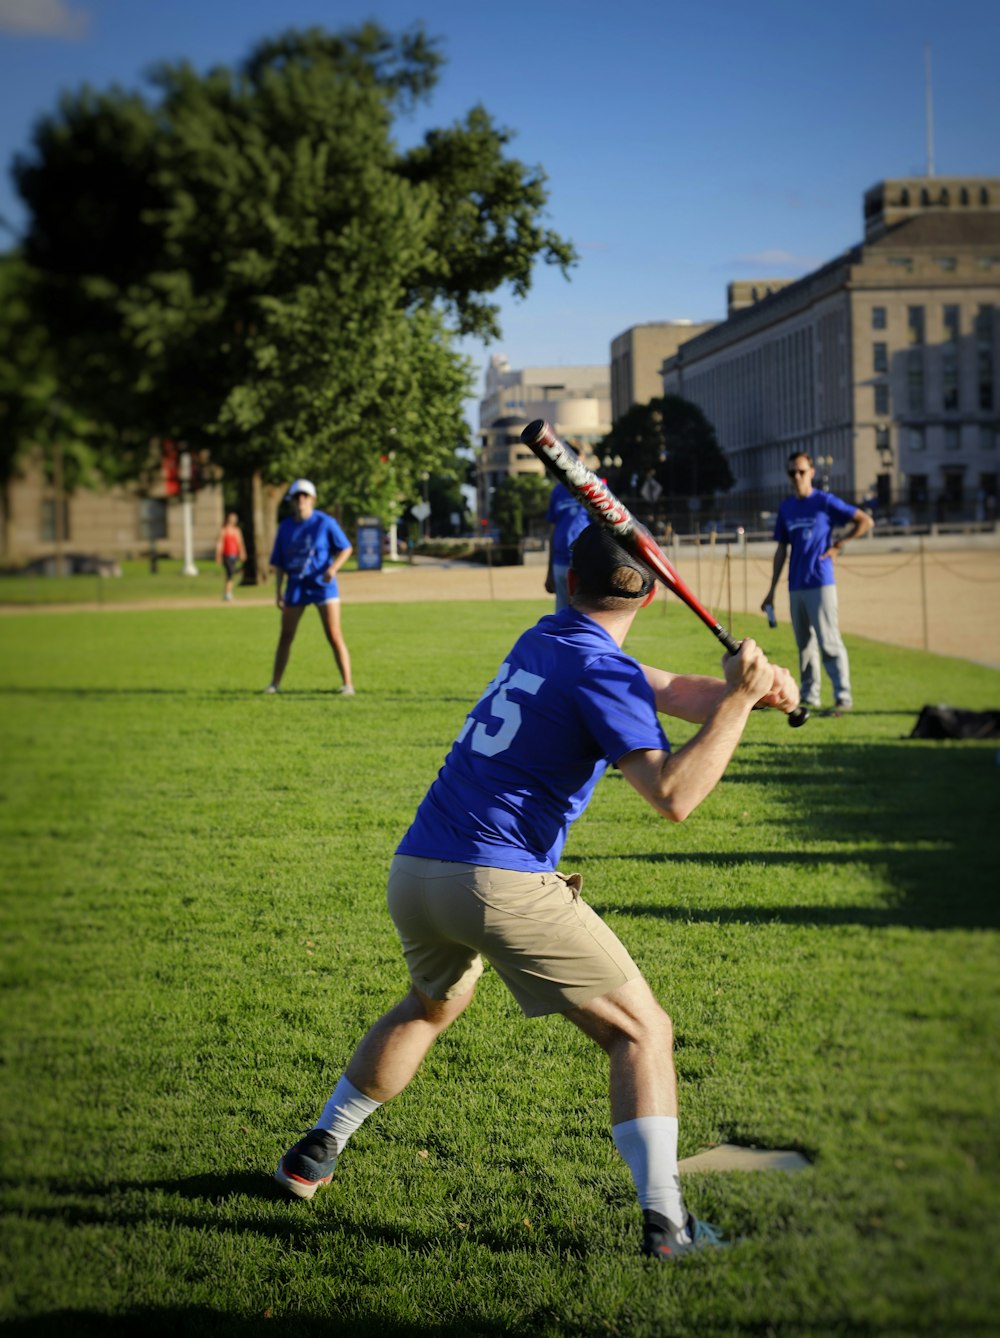 una persona balanceando un bate de béisbol